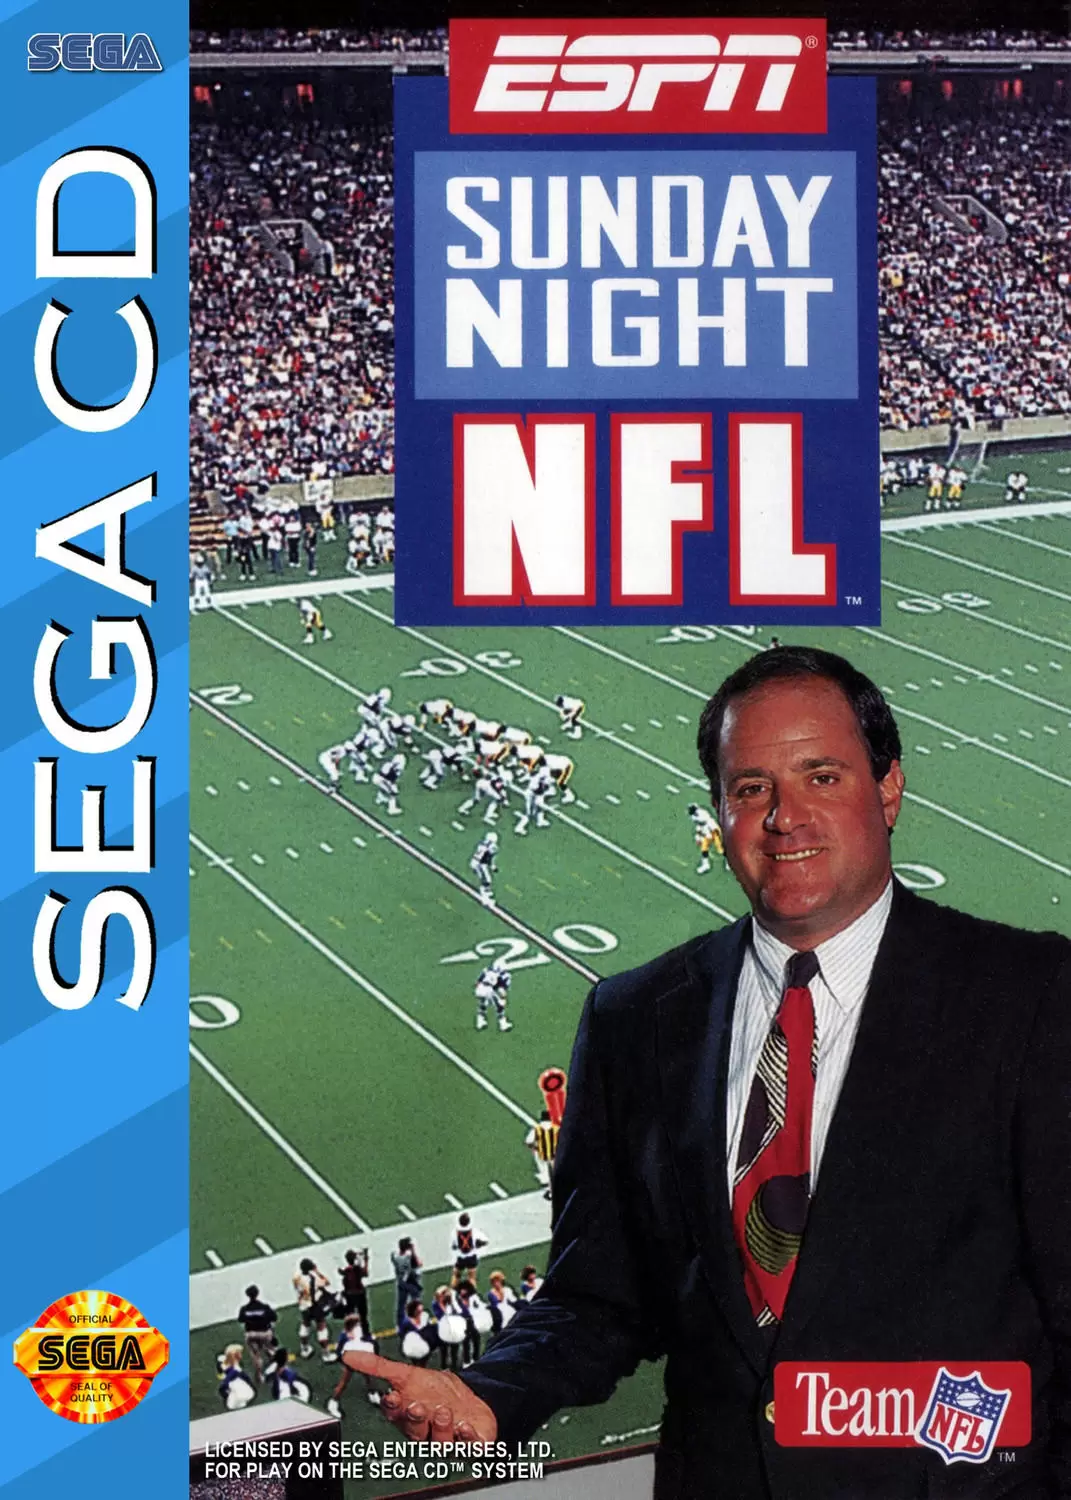 SEGA Mega CD Games - ESPN Sunday Night NFL